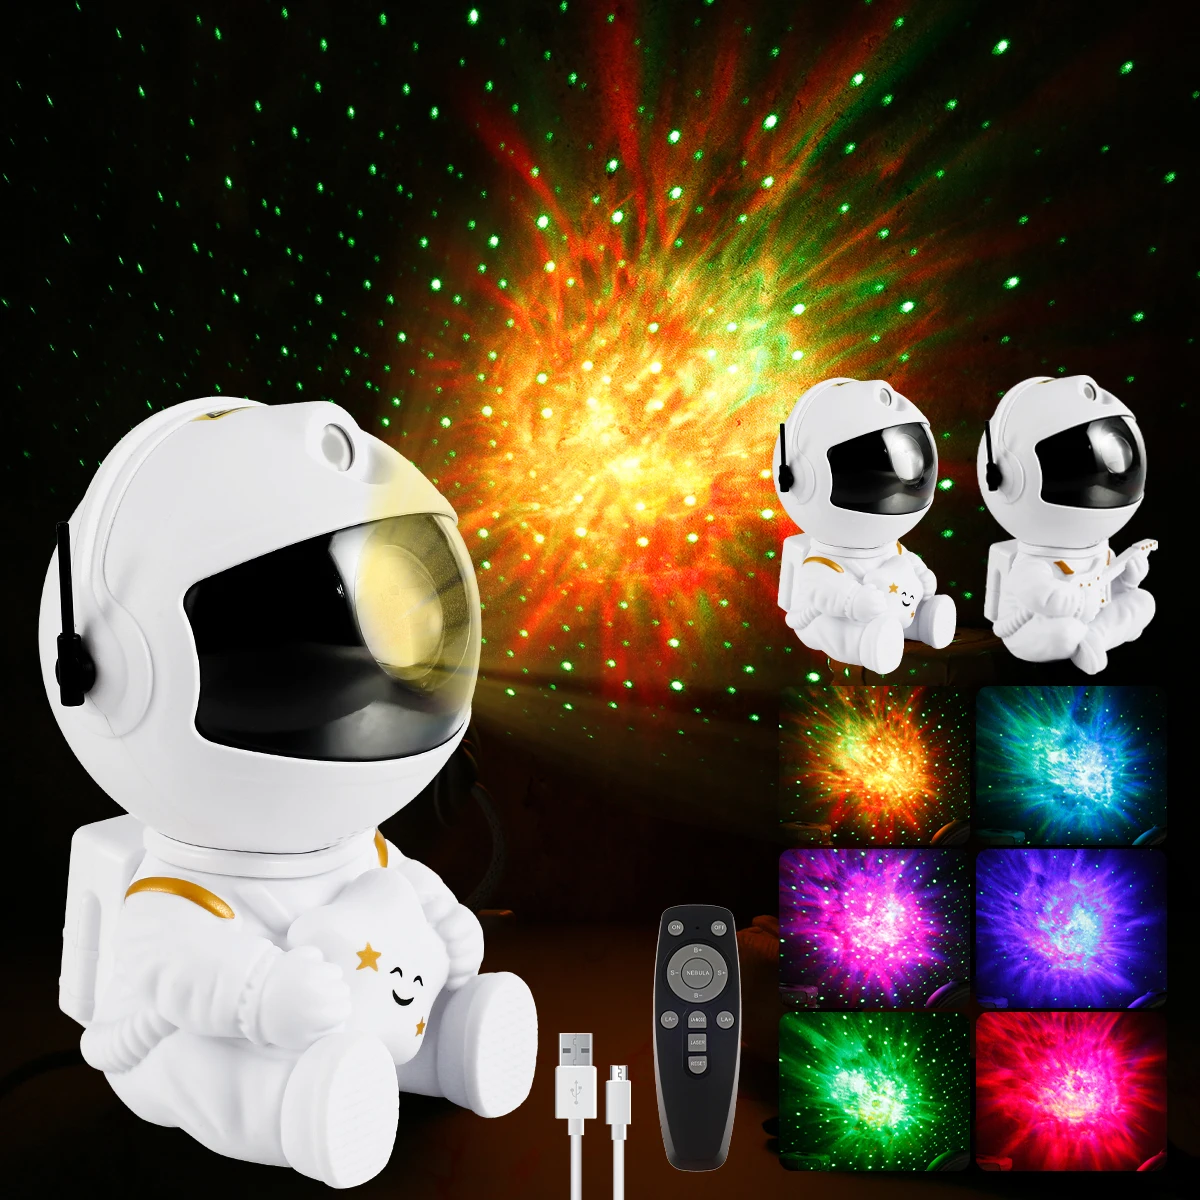 

Проектор астронавт звездное небо галактика звезды проектор ночной свет Светодиодная лампа для спальни комнаты Декоративные ночные светил...